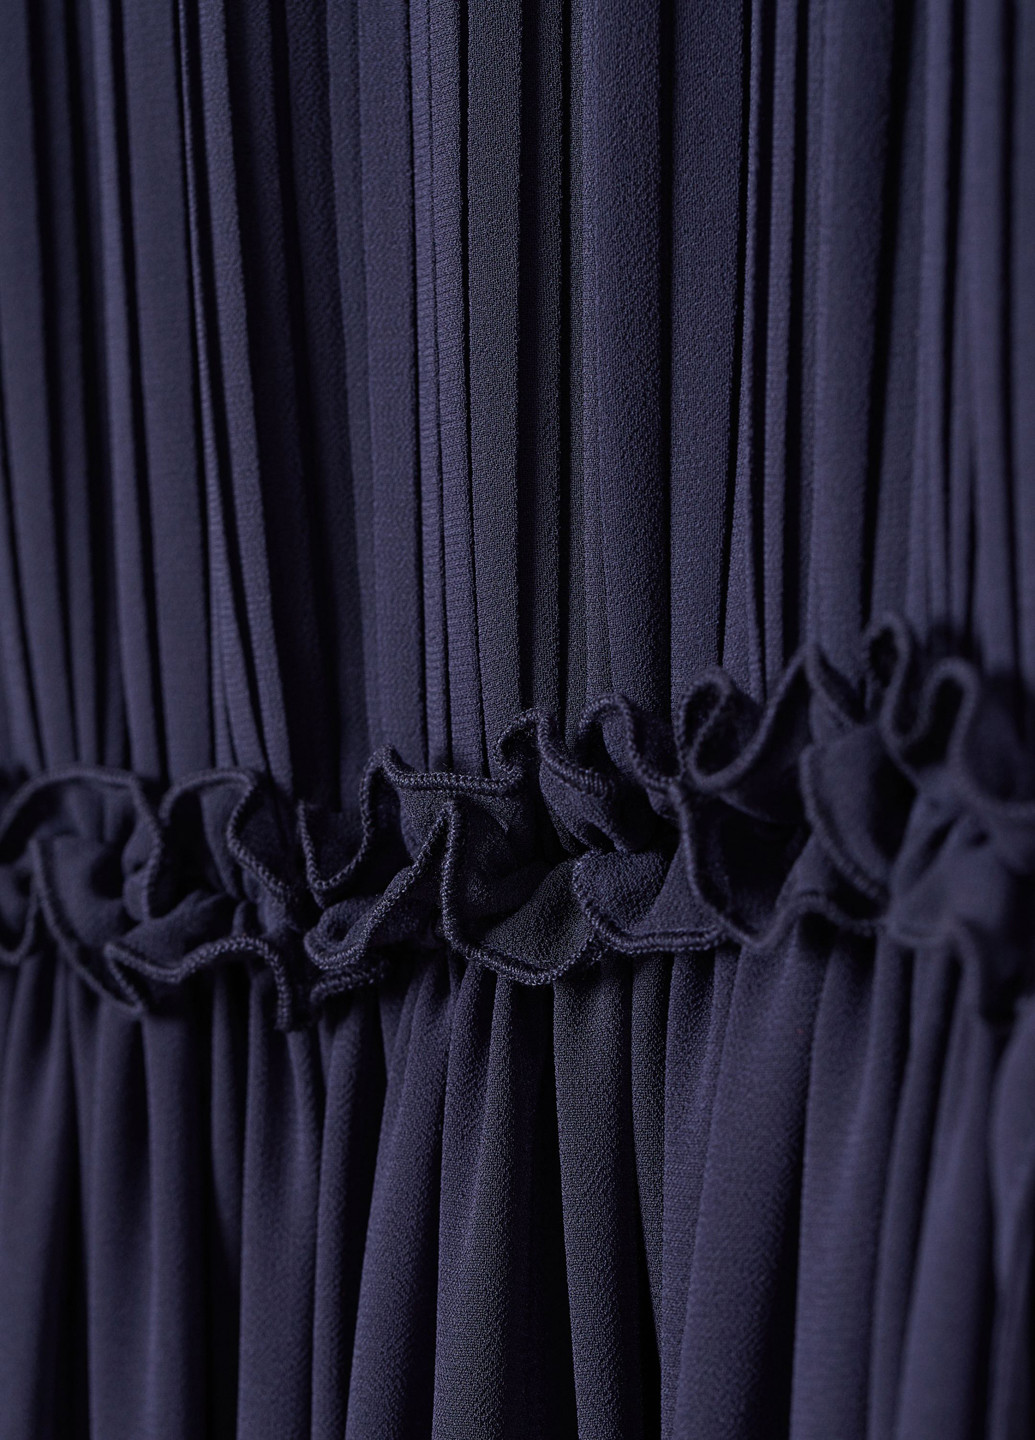 Темно-синее вечернее платье плиссированное H&M